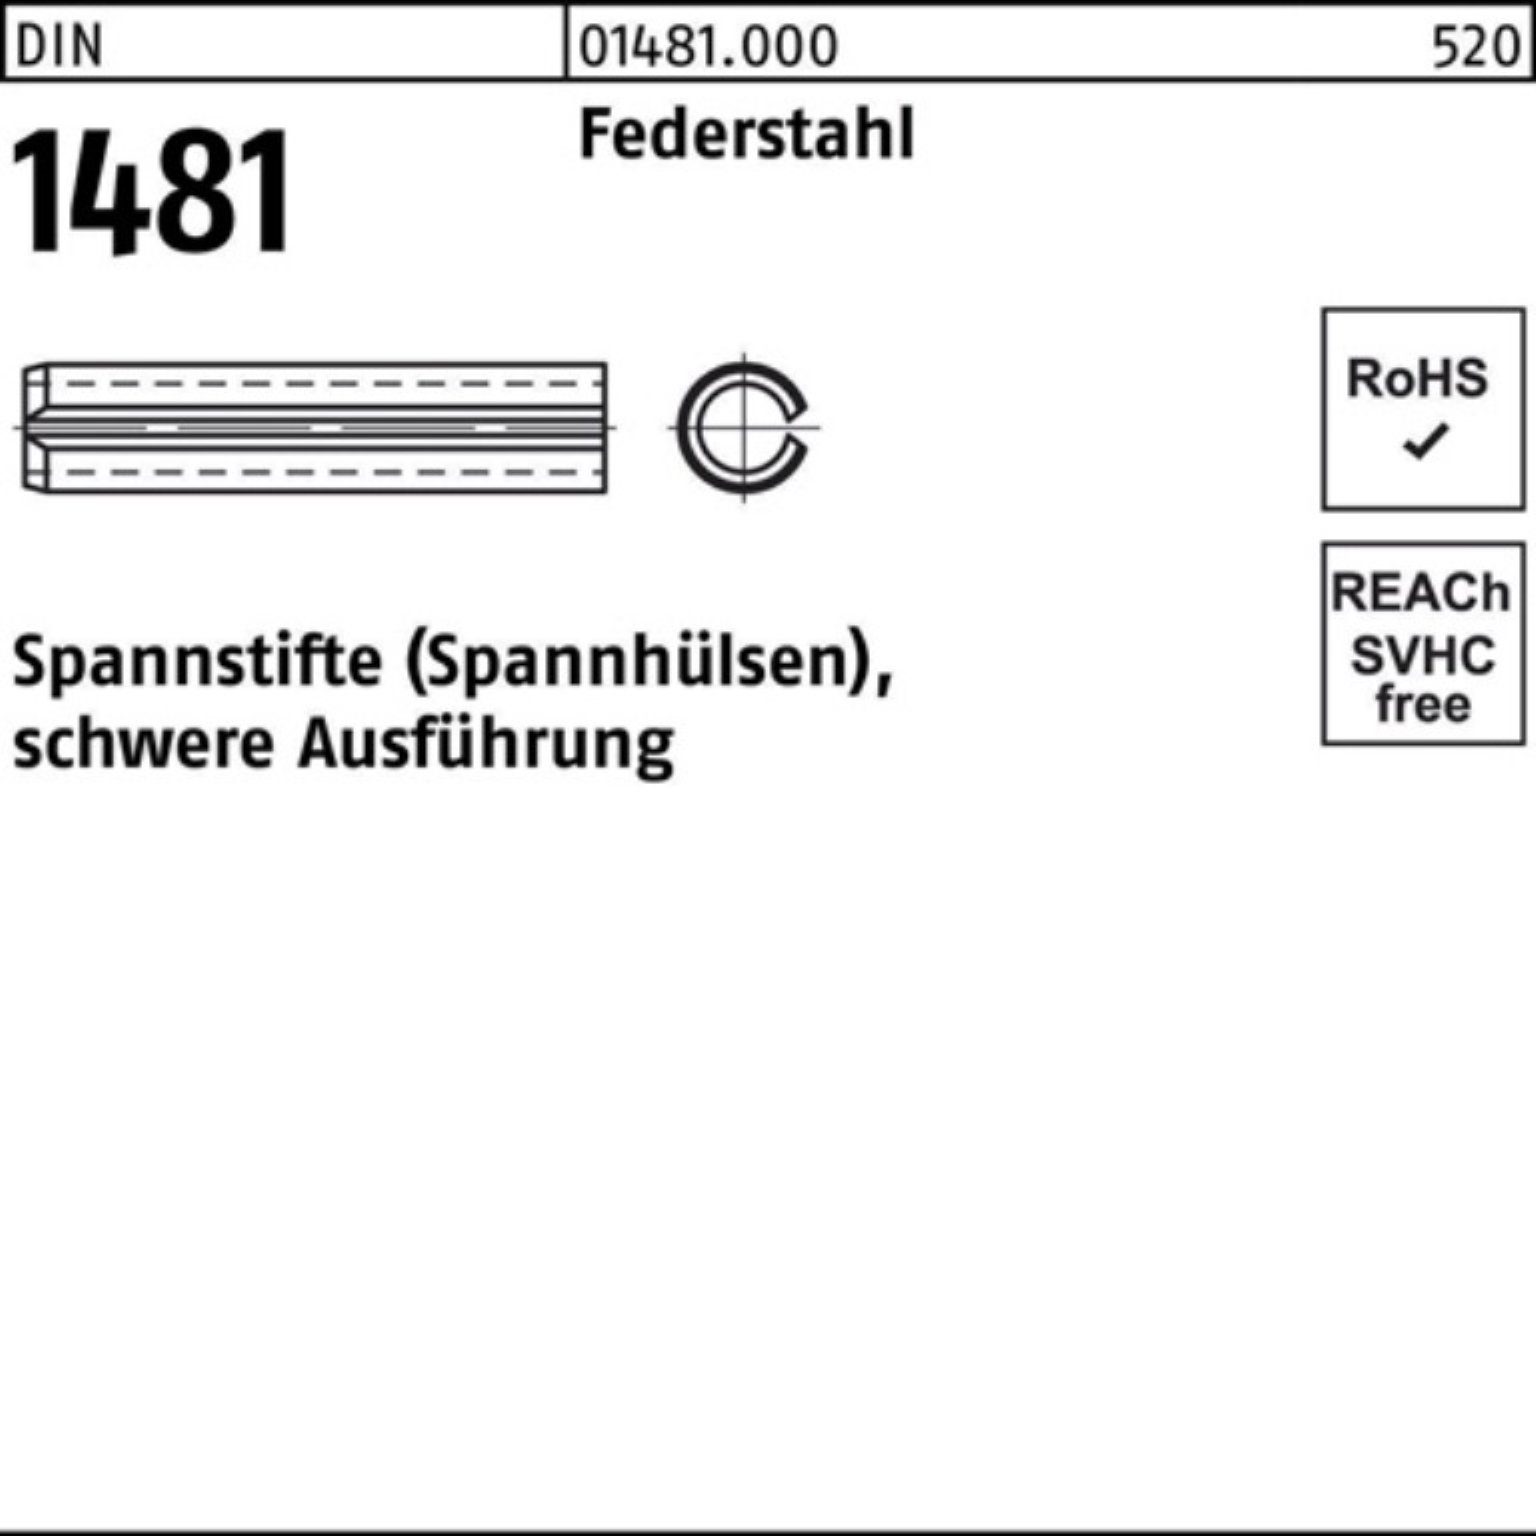 Reyher Spannstift 14 Pack Federstahl 1481 500er 50 DIN 4x Spannstift Ausführung schwere